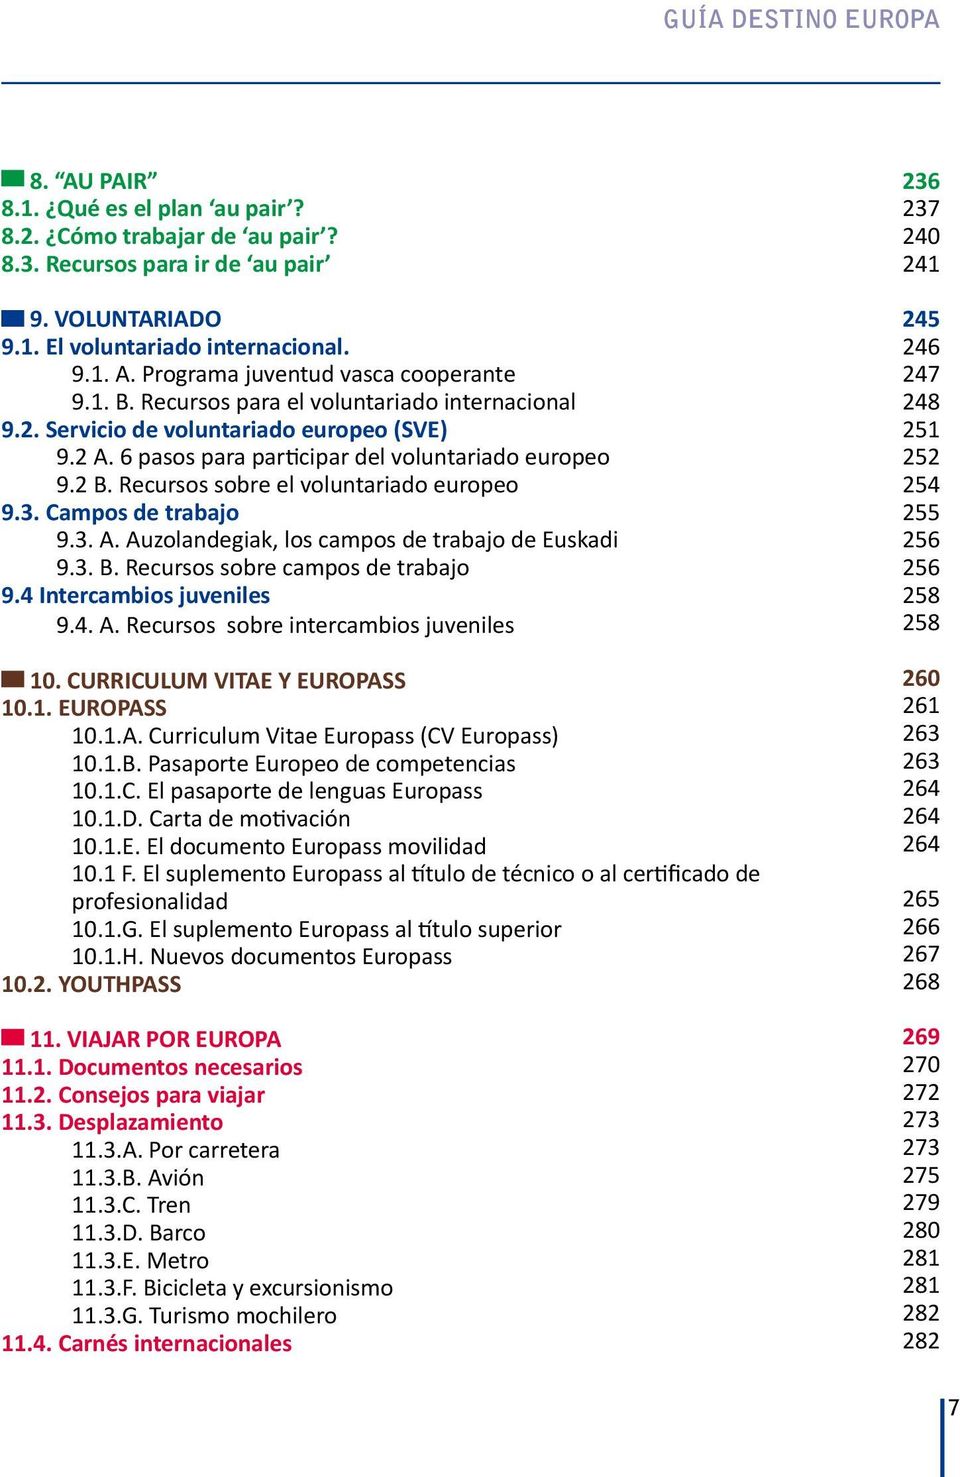 Campos de trabajo 9.3. A. Auzolandegiak, los campos de trabajo de Euskadi 9.3. B. Recursos sobre campos de trabajo 9.4 Intercambios juveniles 9.4. A. Recursos sobre intercambios juveniles 10.